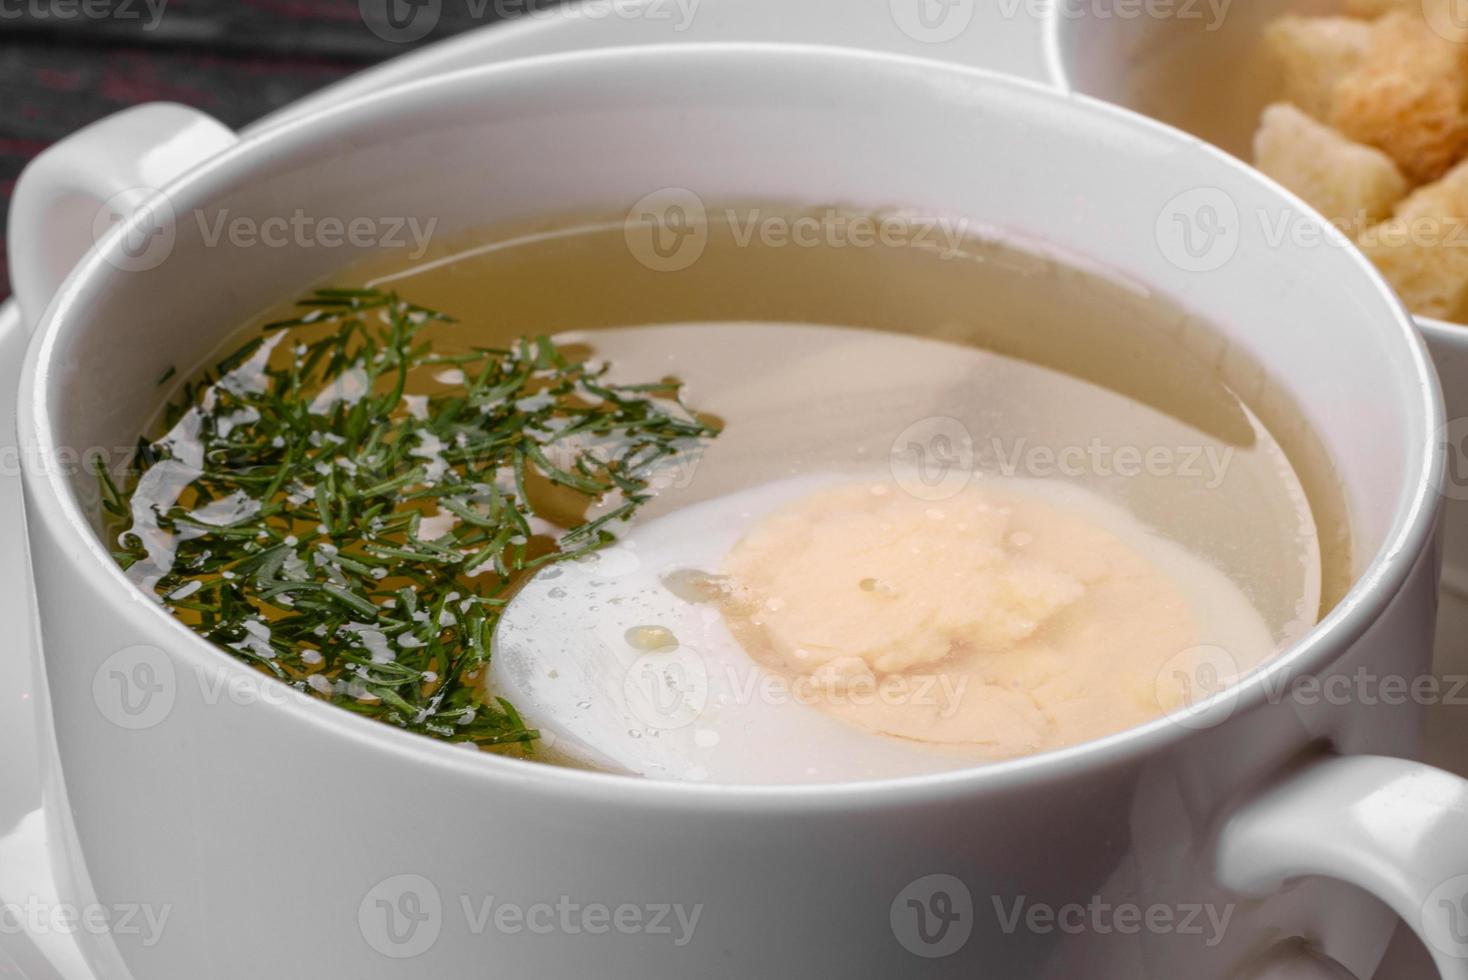 sopa de macarrão asiática, ramen com frango, legumes e ovo em uma tigela branca foto